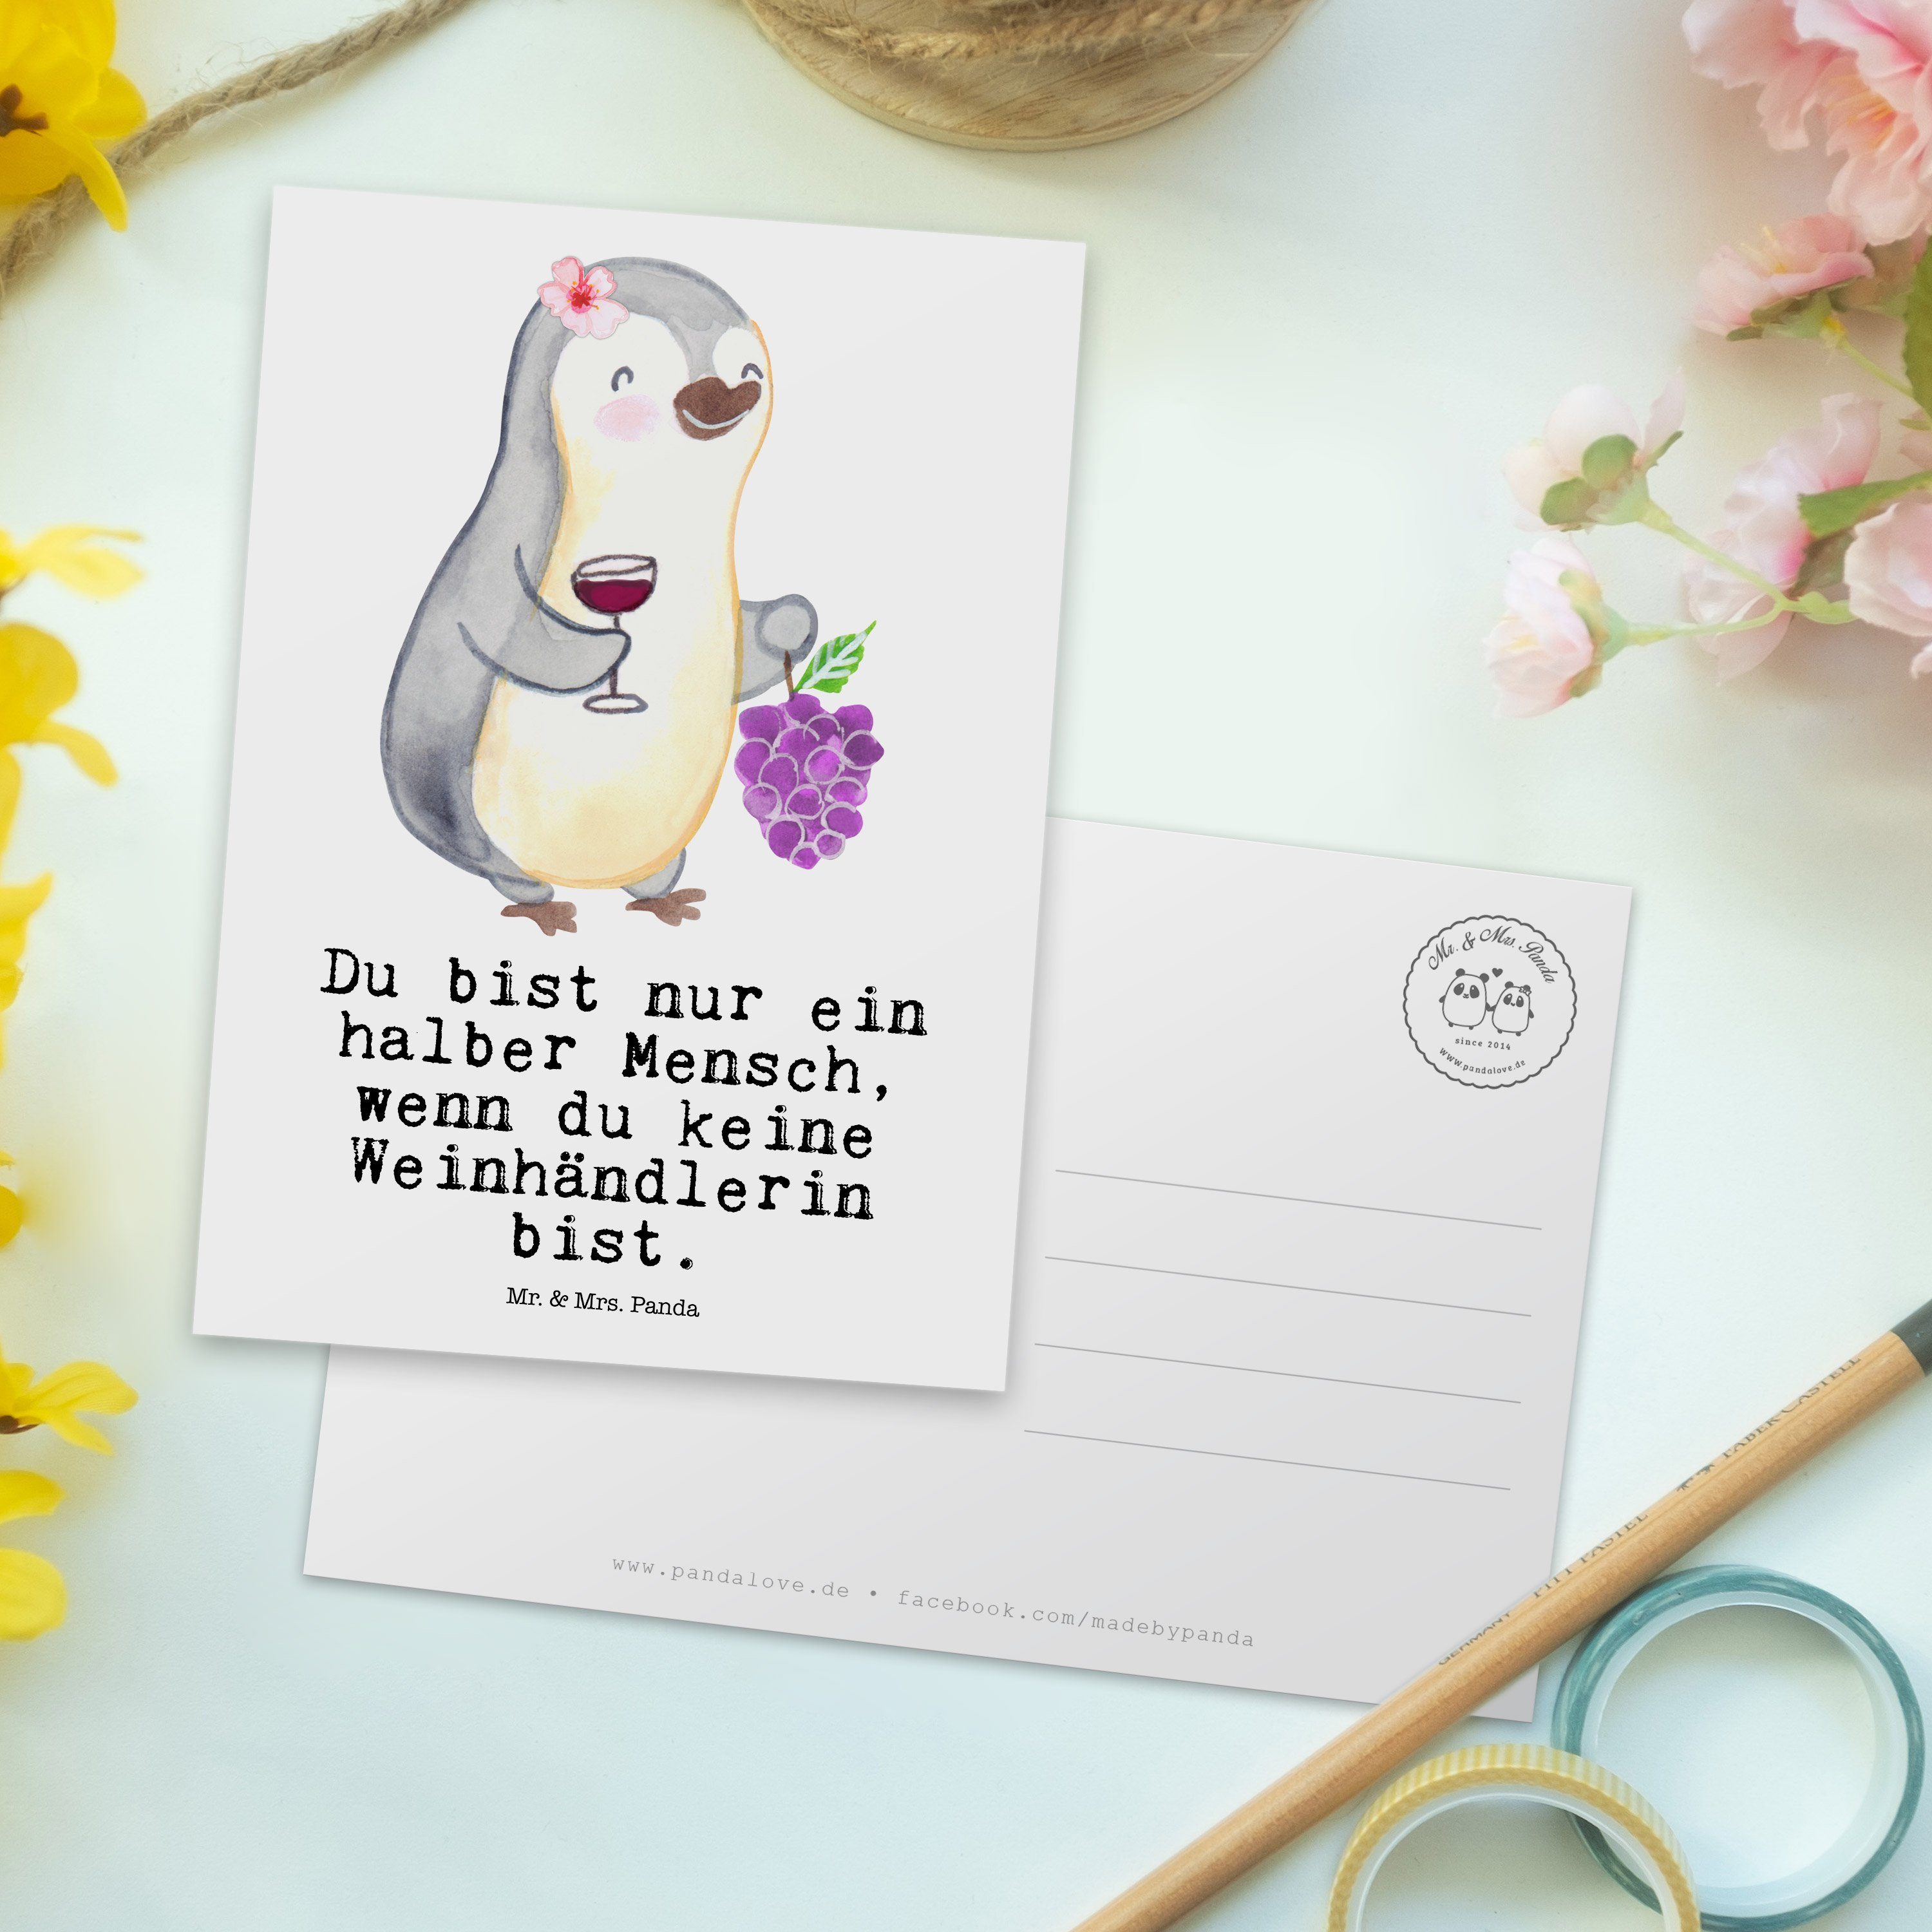 Mr. & Mrs. Panda Einladungskarte, - Dan Herz Firma, Weinhändlerin - Postkarte Geschenk, mit Weiß